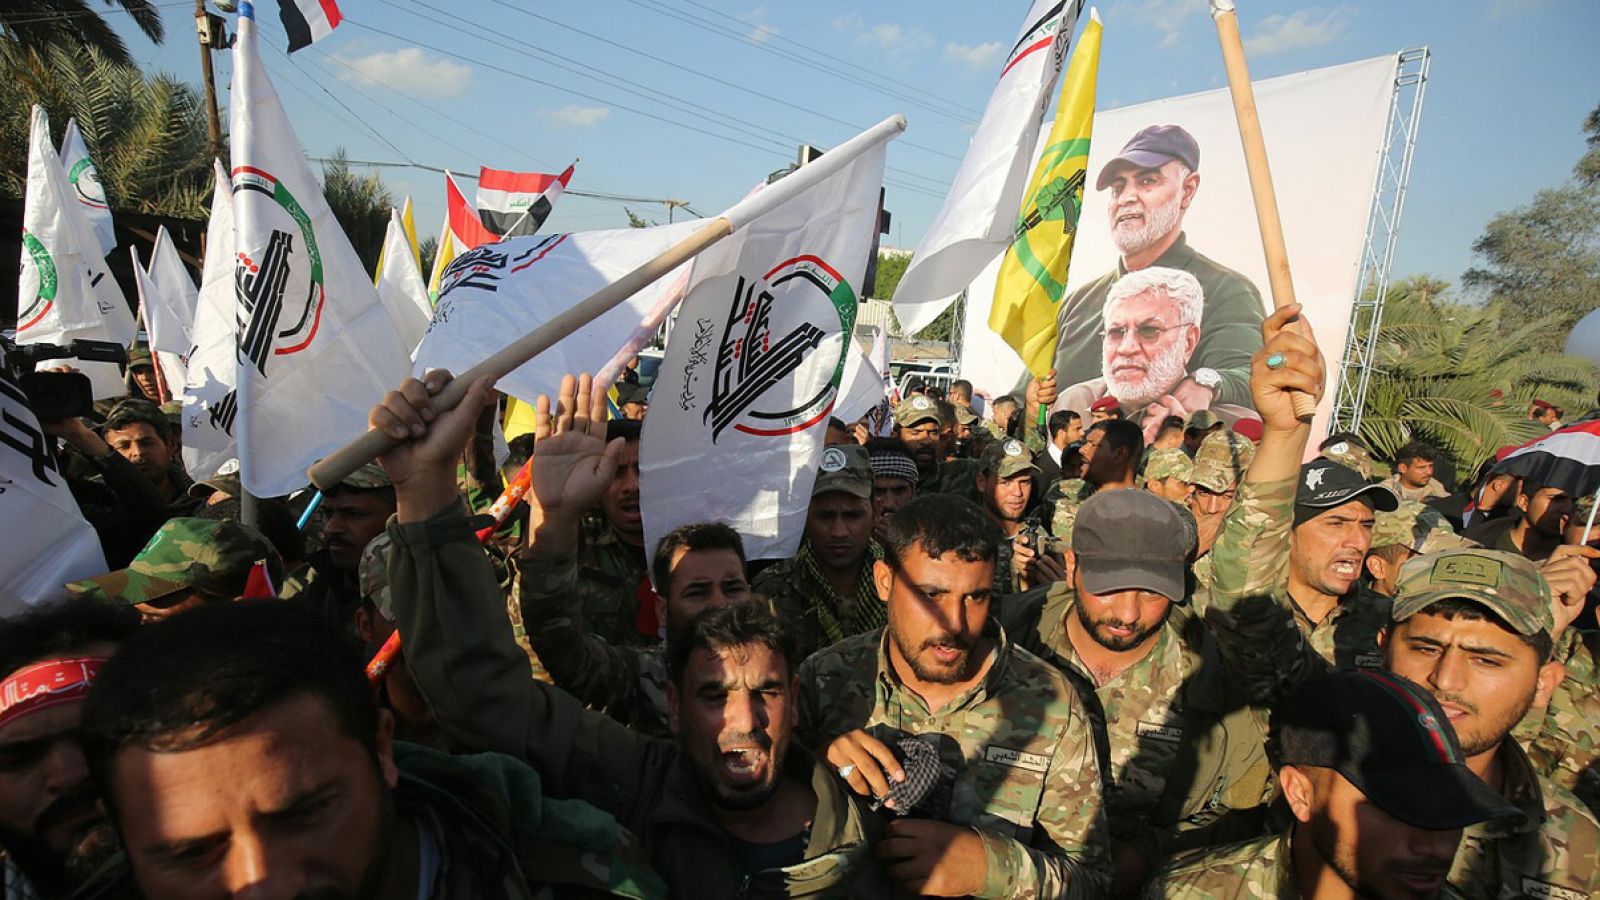 Miembros de la milicia paralimitar Hashid al Shaabi cantan lemas contra EE.UU. tras el asesinato de Qasem Soleimani, en Bagdad. Foto: AHMAD AL-RUBAYE / AFP